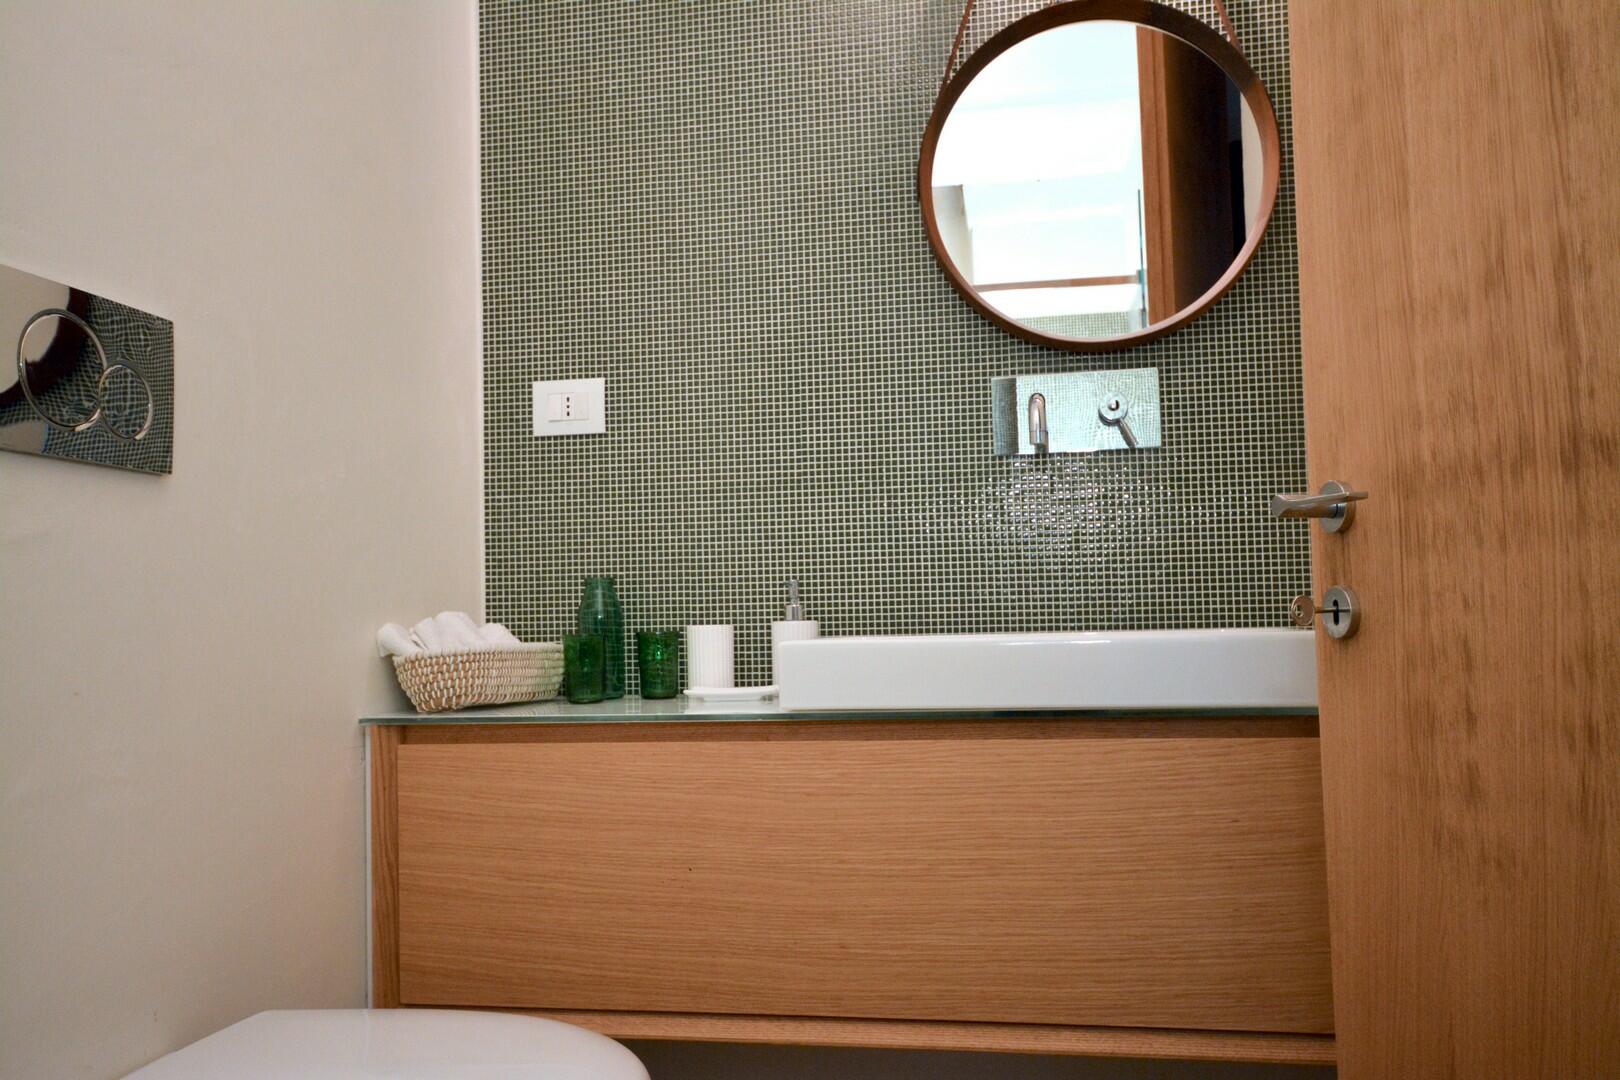 Ground floor - small double bedroom D -  shower room